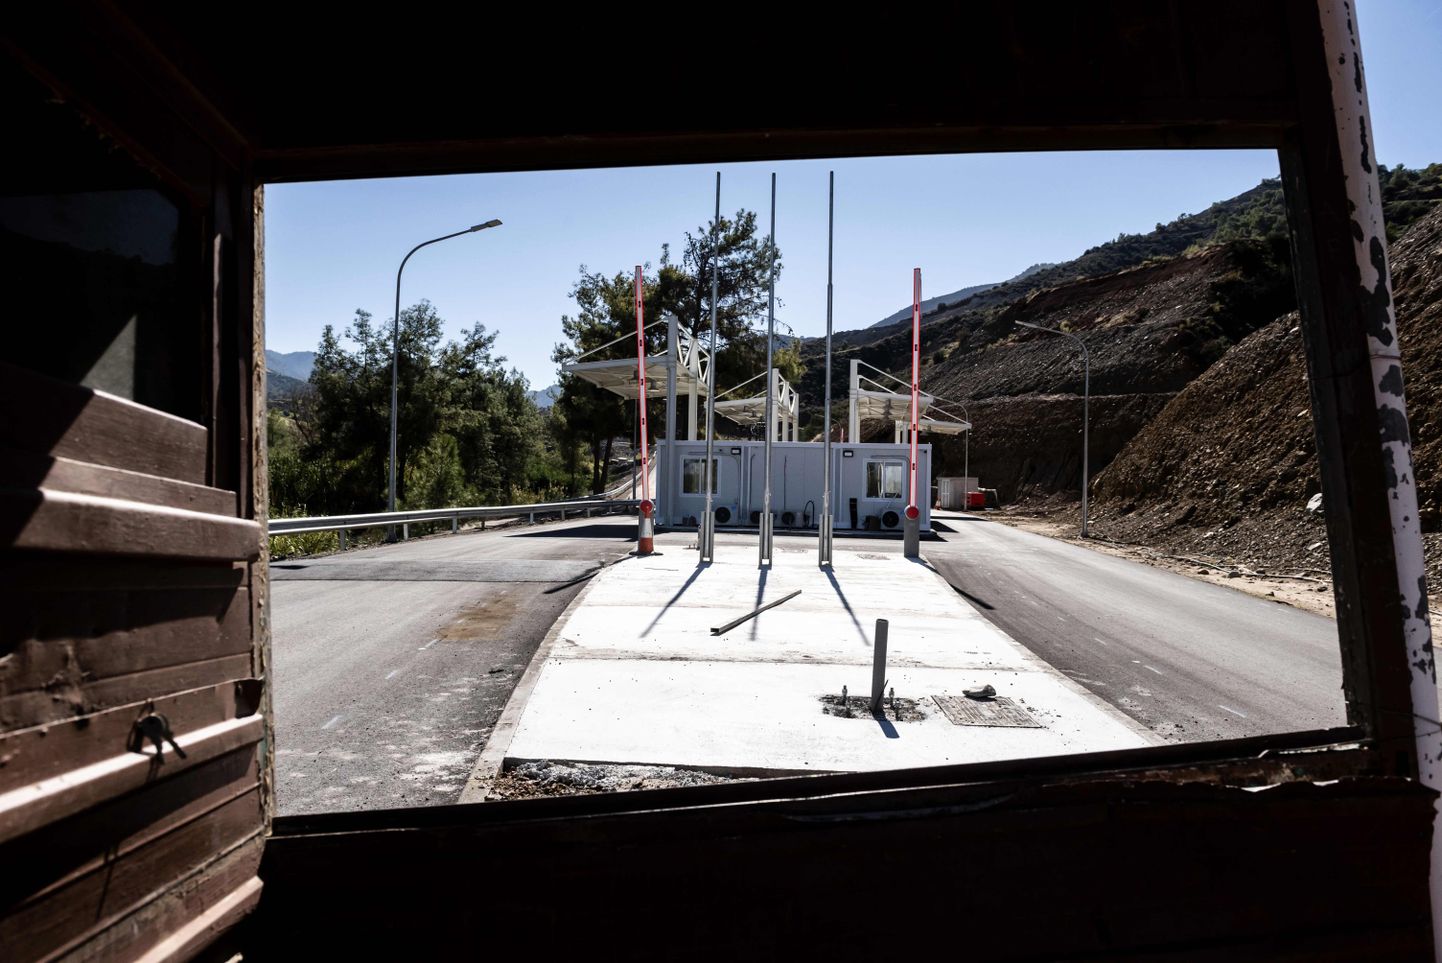 Valmimisjärgus Lefka piiripunkt Küprose Kreeka poolel oktoobri lõpus. Täna avati see piiriületajatele.